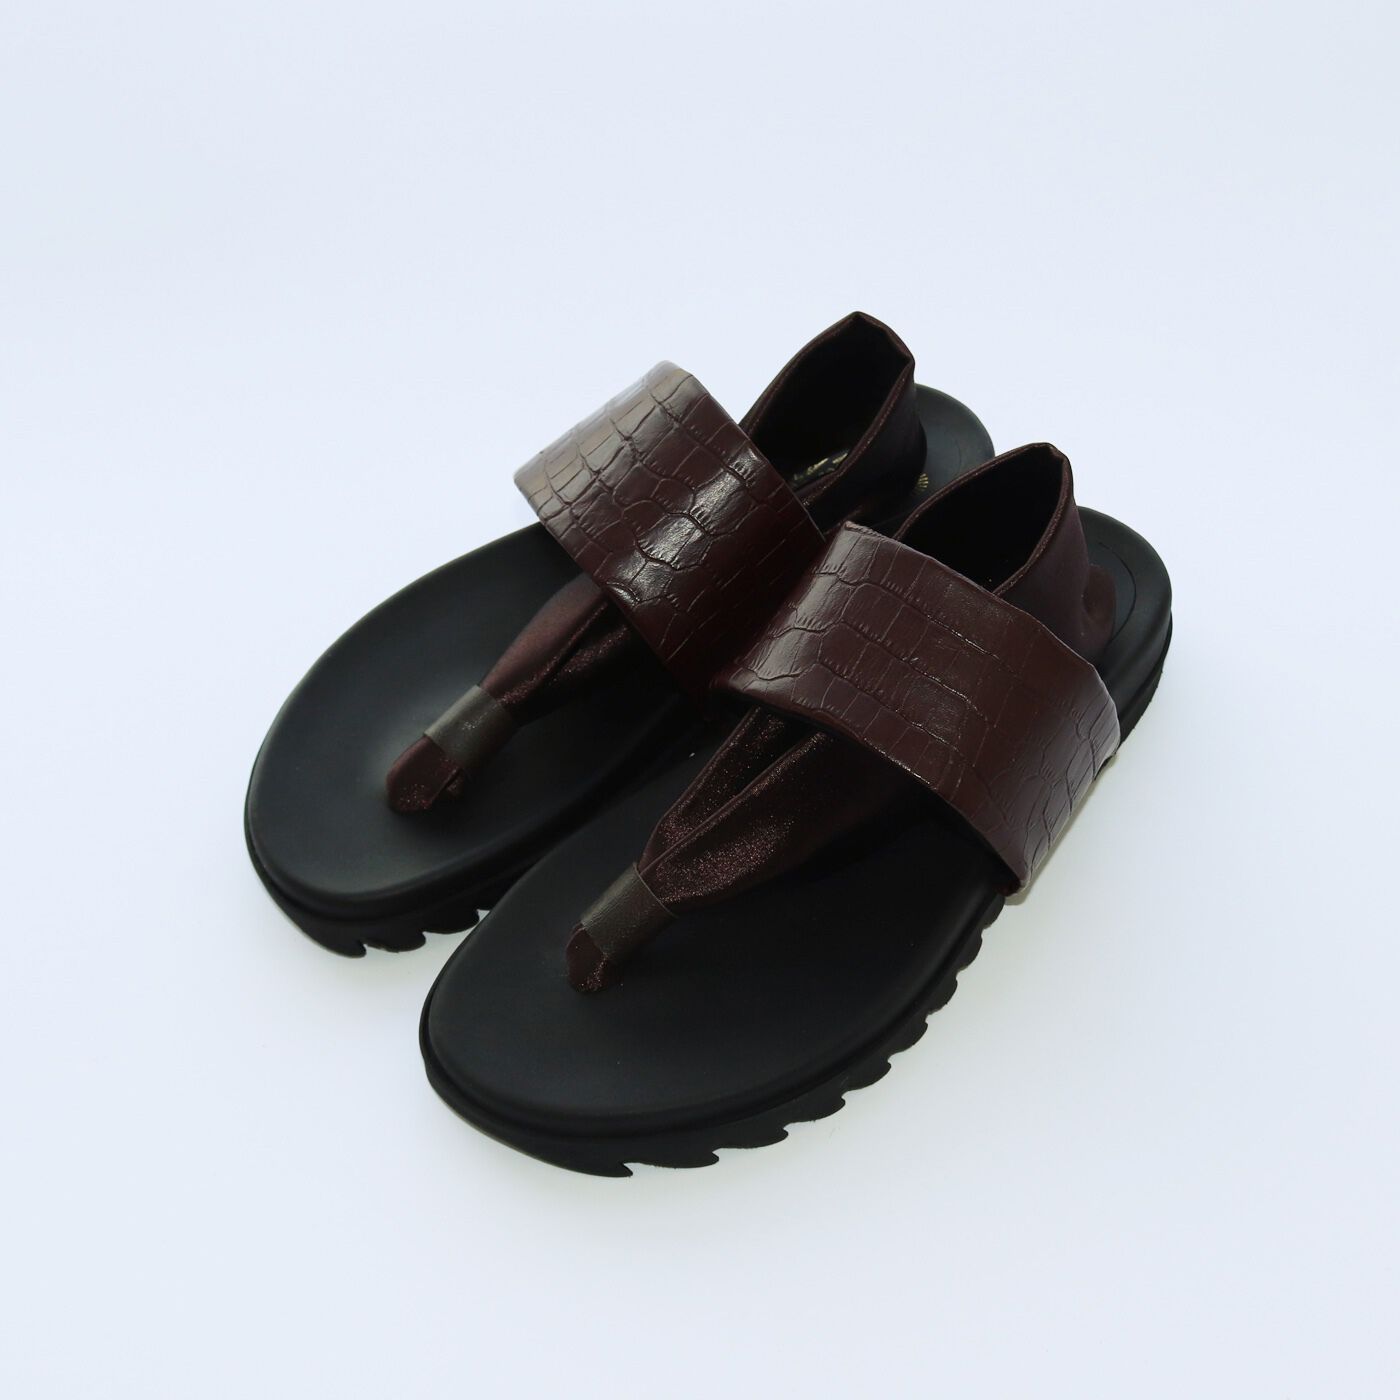 ＆Stories|靴デザイナーの理想で仕上げた 職人本革のトングシューズ〈クロコ型押し柄・ブラウン〉|21.0〜26.5cmまで対応する充実のサイズ展開。